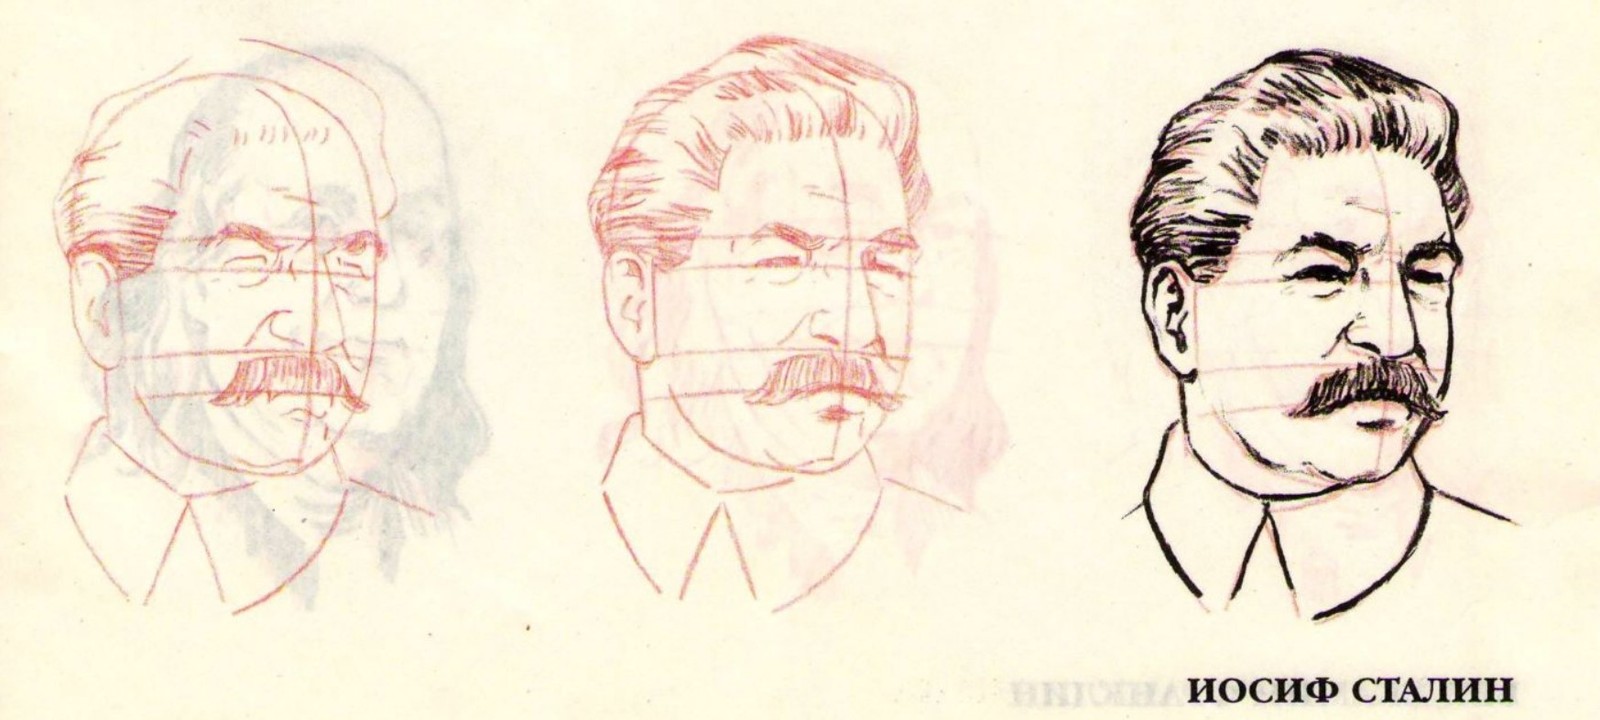 Филонов. Портрет Иосифа Сталина. 1935.